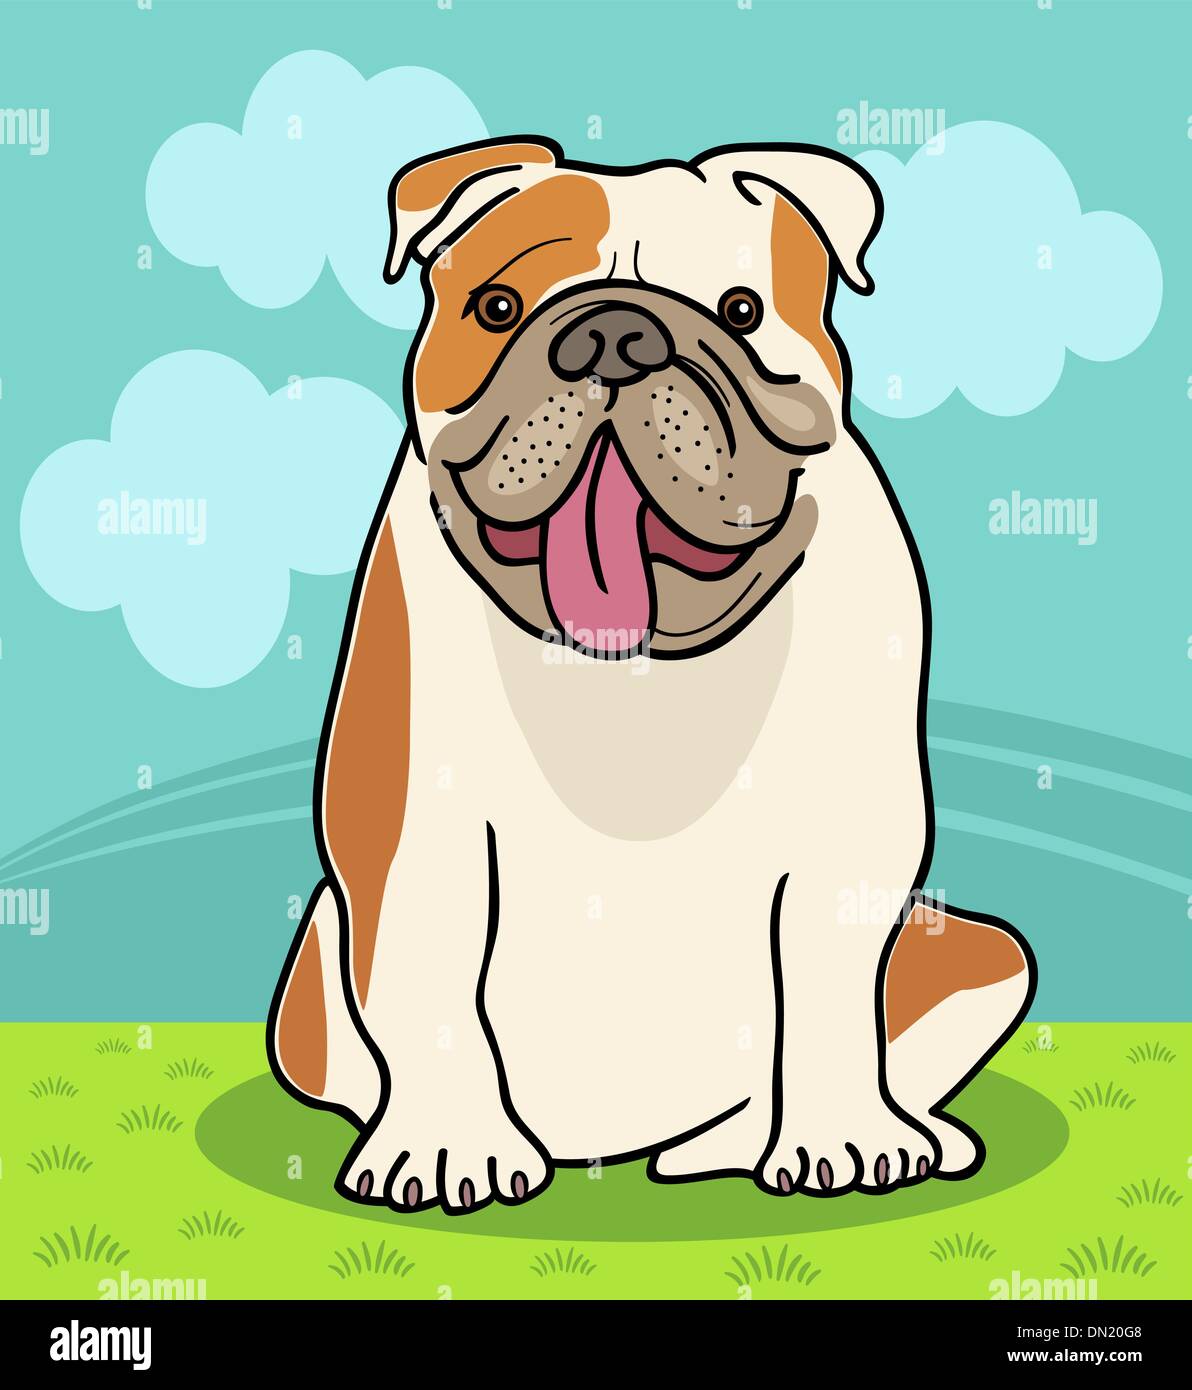 english bulldog dog cartoon illustration Stock Vector